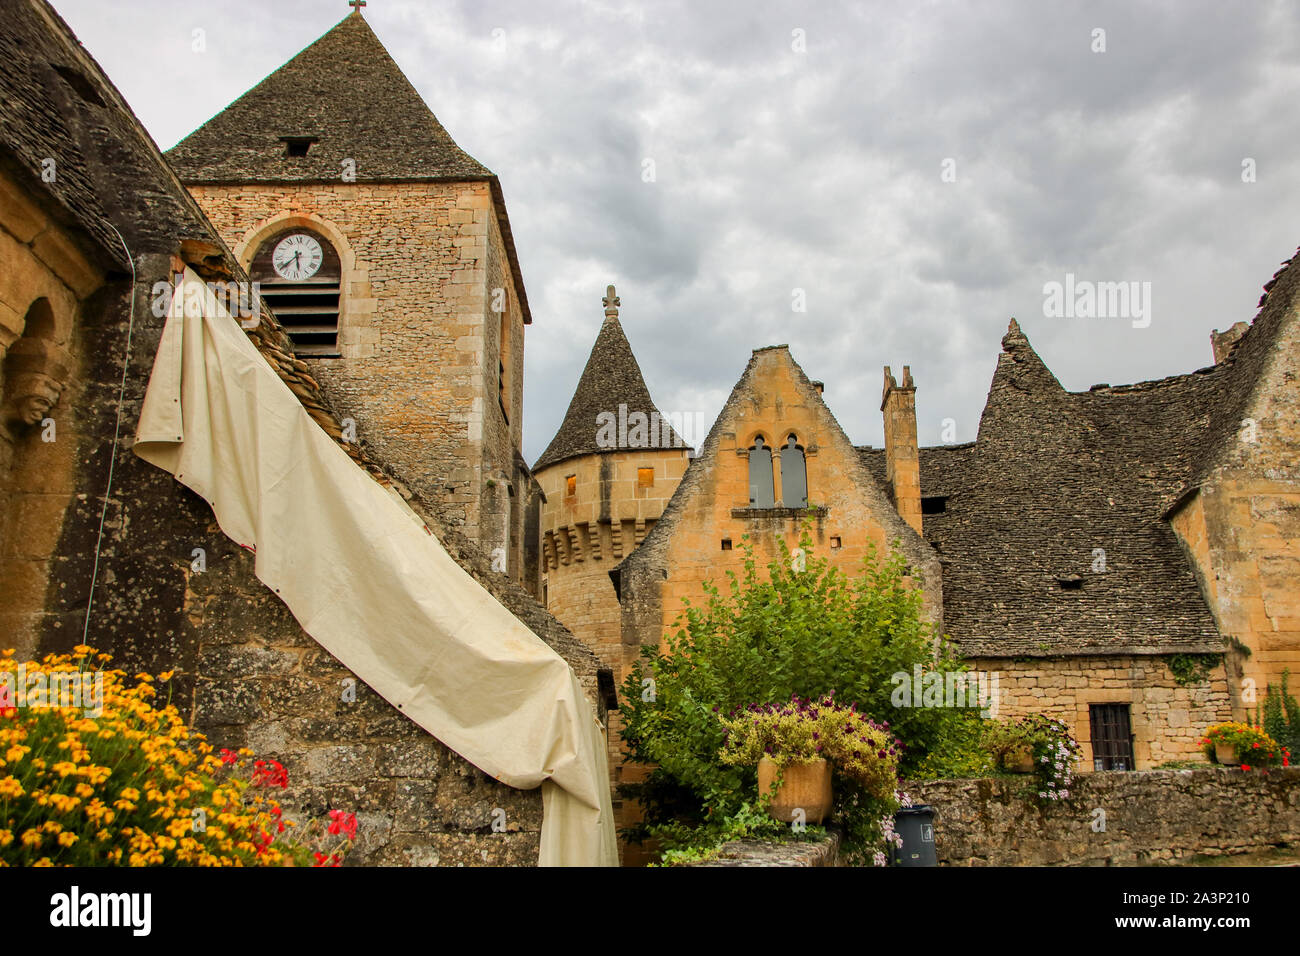 Le case medioevali nel villaggio di saint amand de coly , Perigord Noir in Aquitaine, Francia Foto Stock